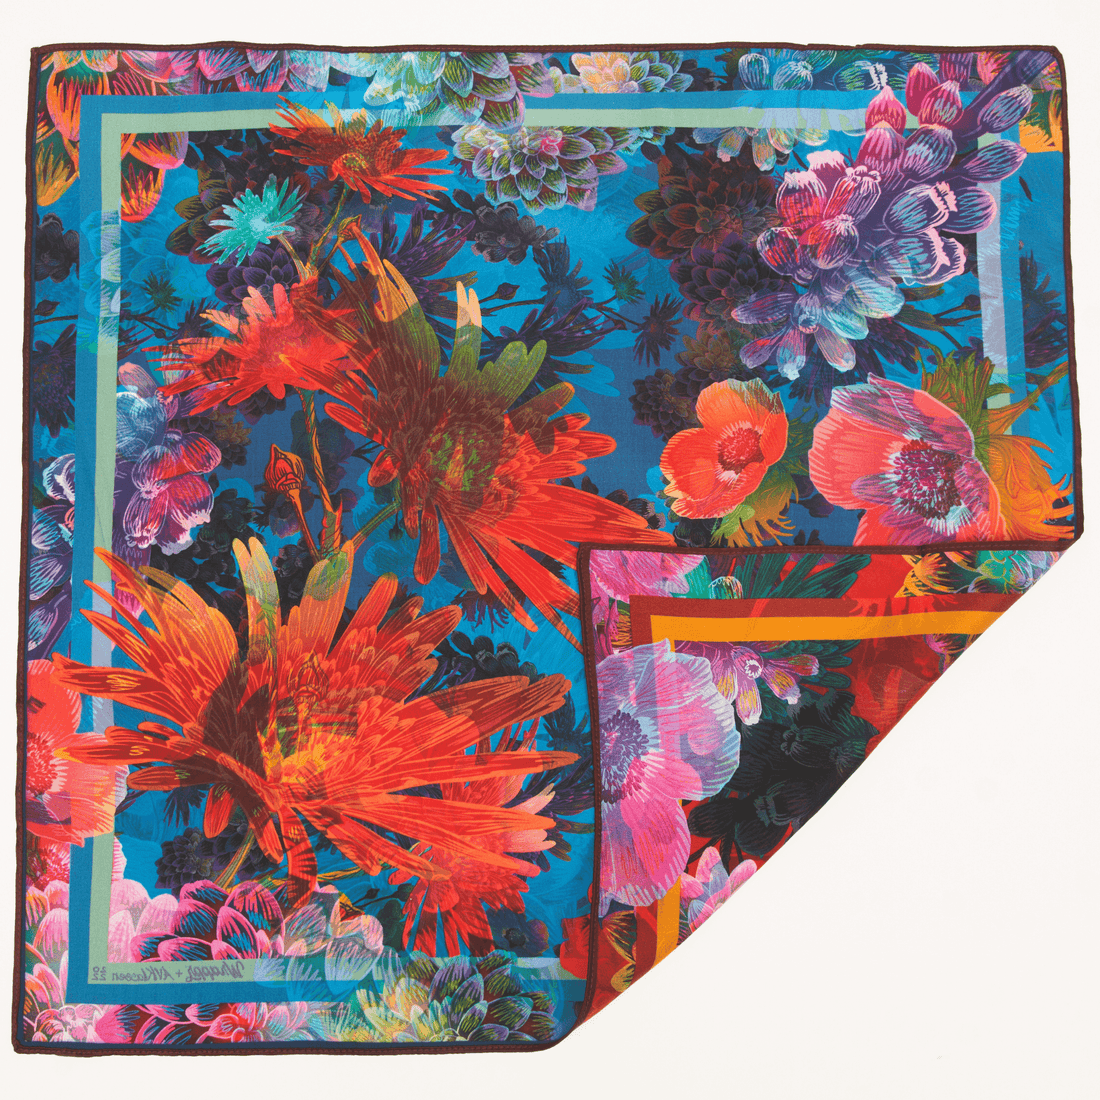 Rosebud | 18" Double-Sided Furoshiki Gift Wrap by Adam Klassen - Wrappr